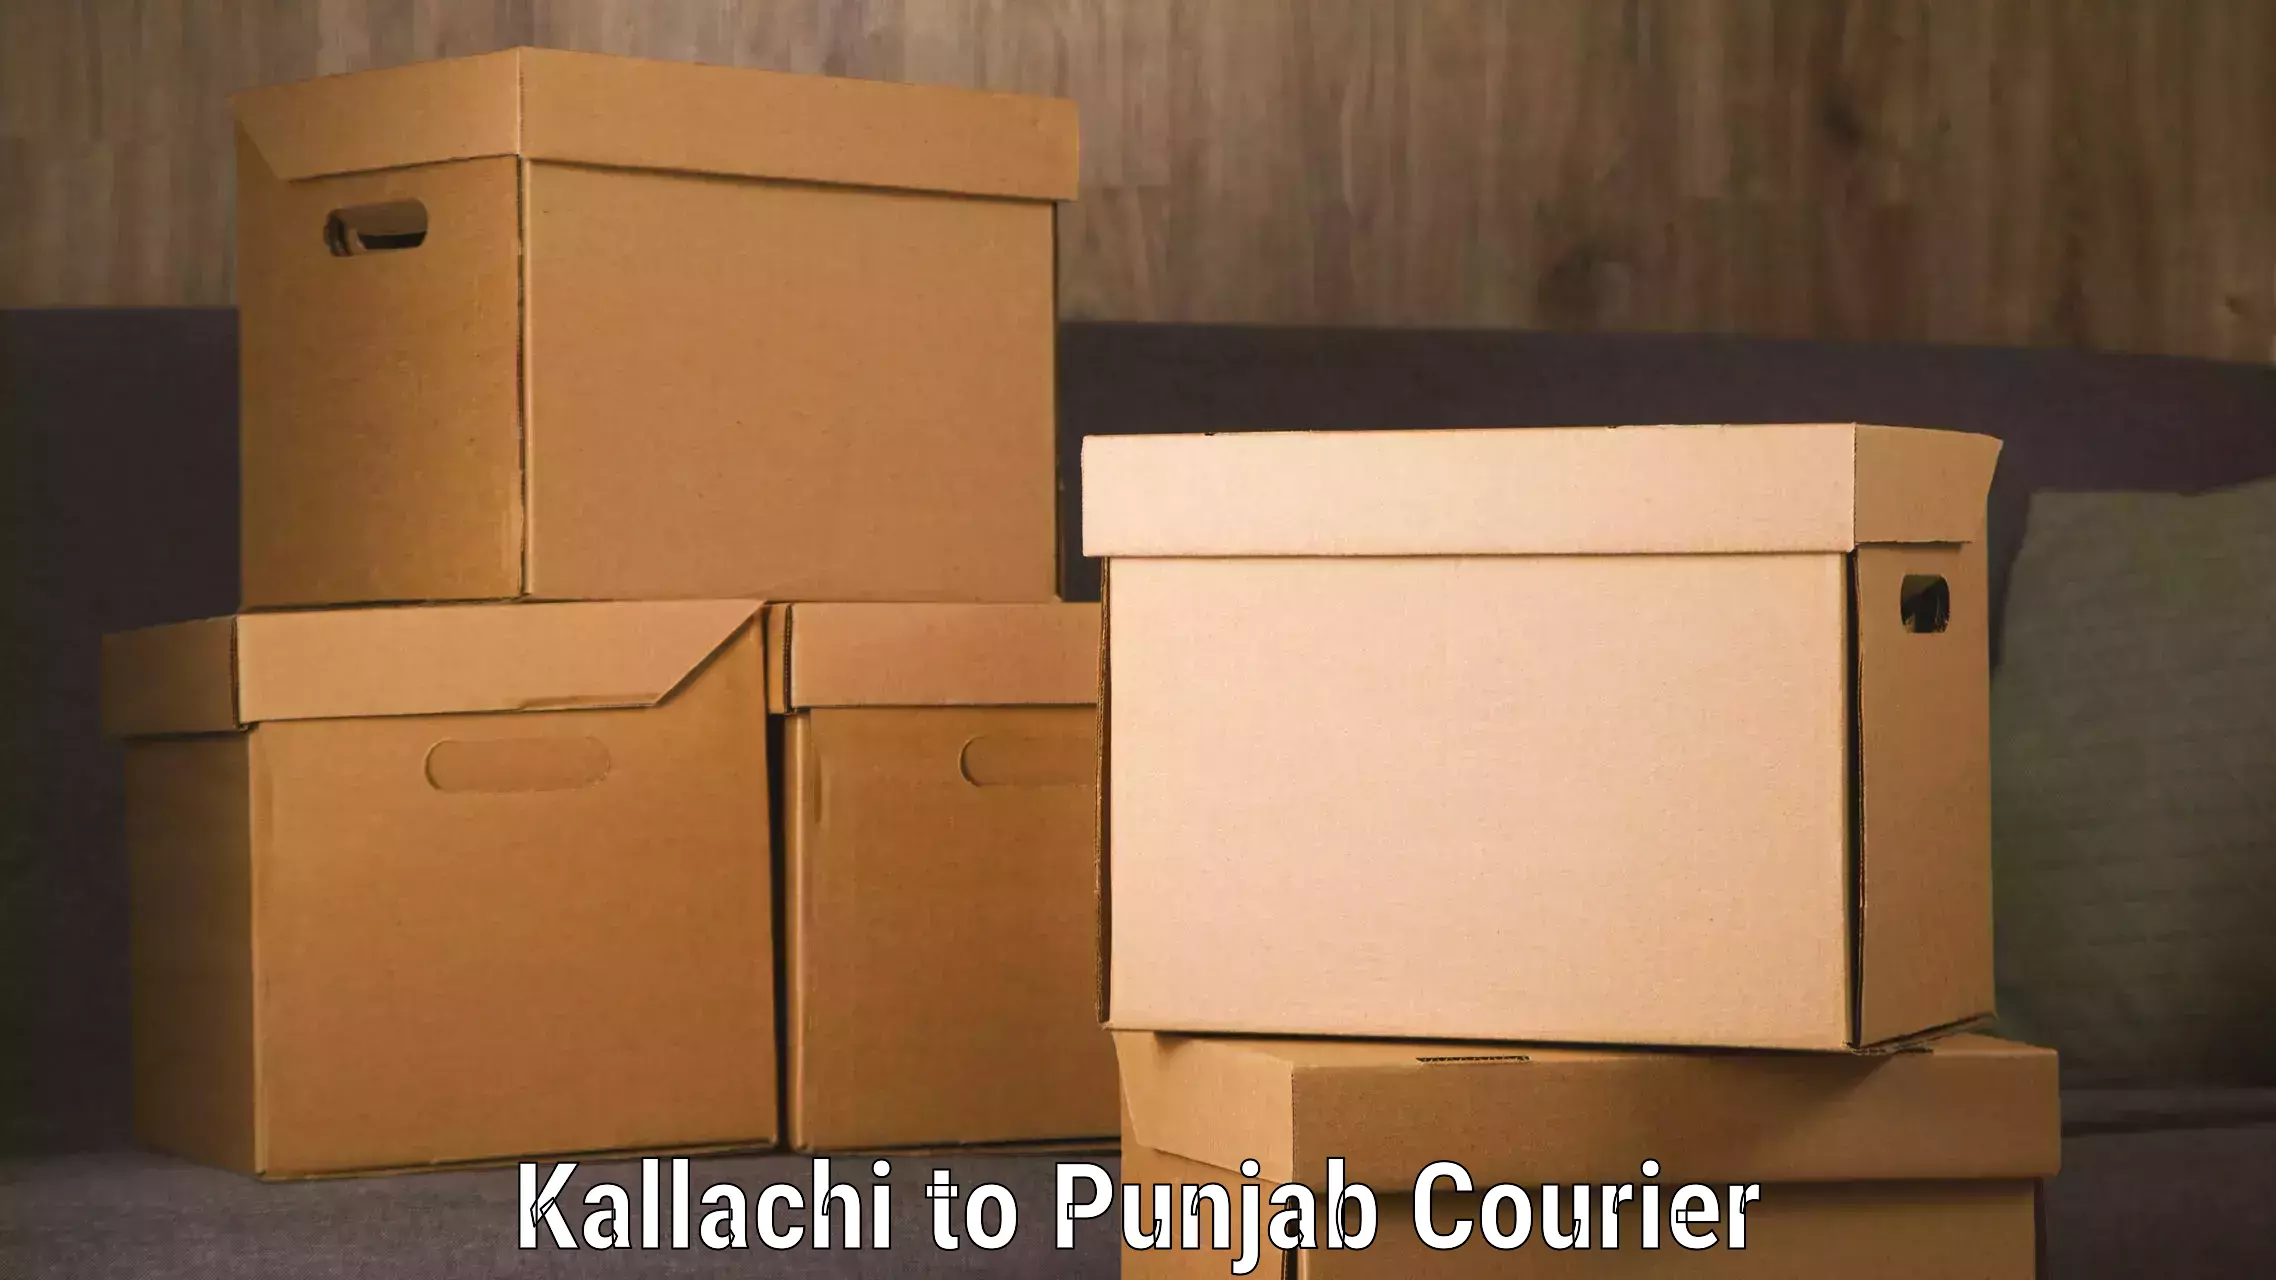 International courier networks Kallachi to Ajnala